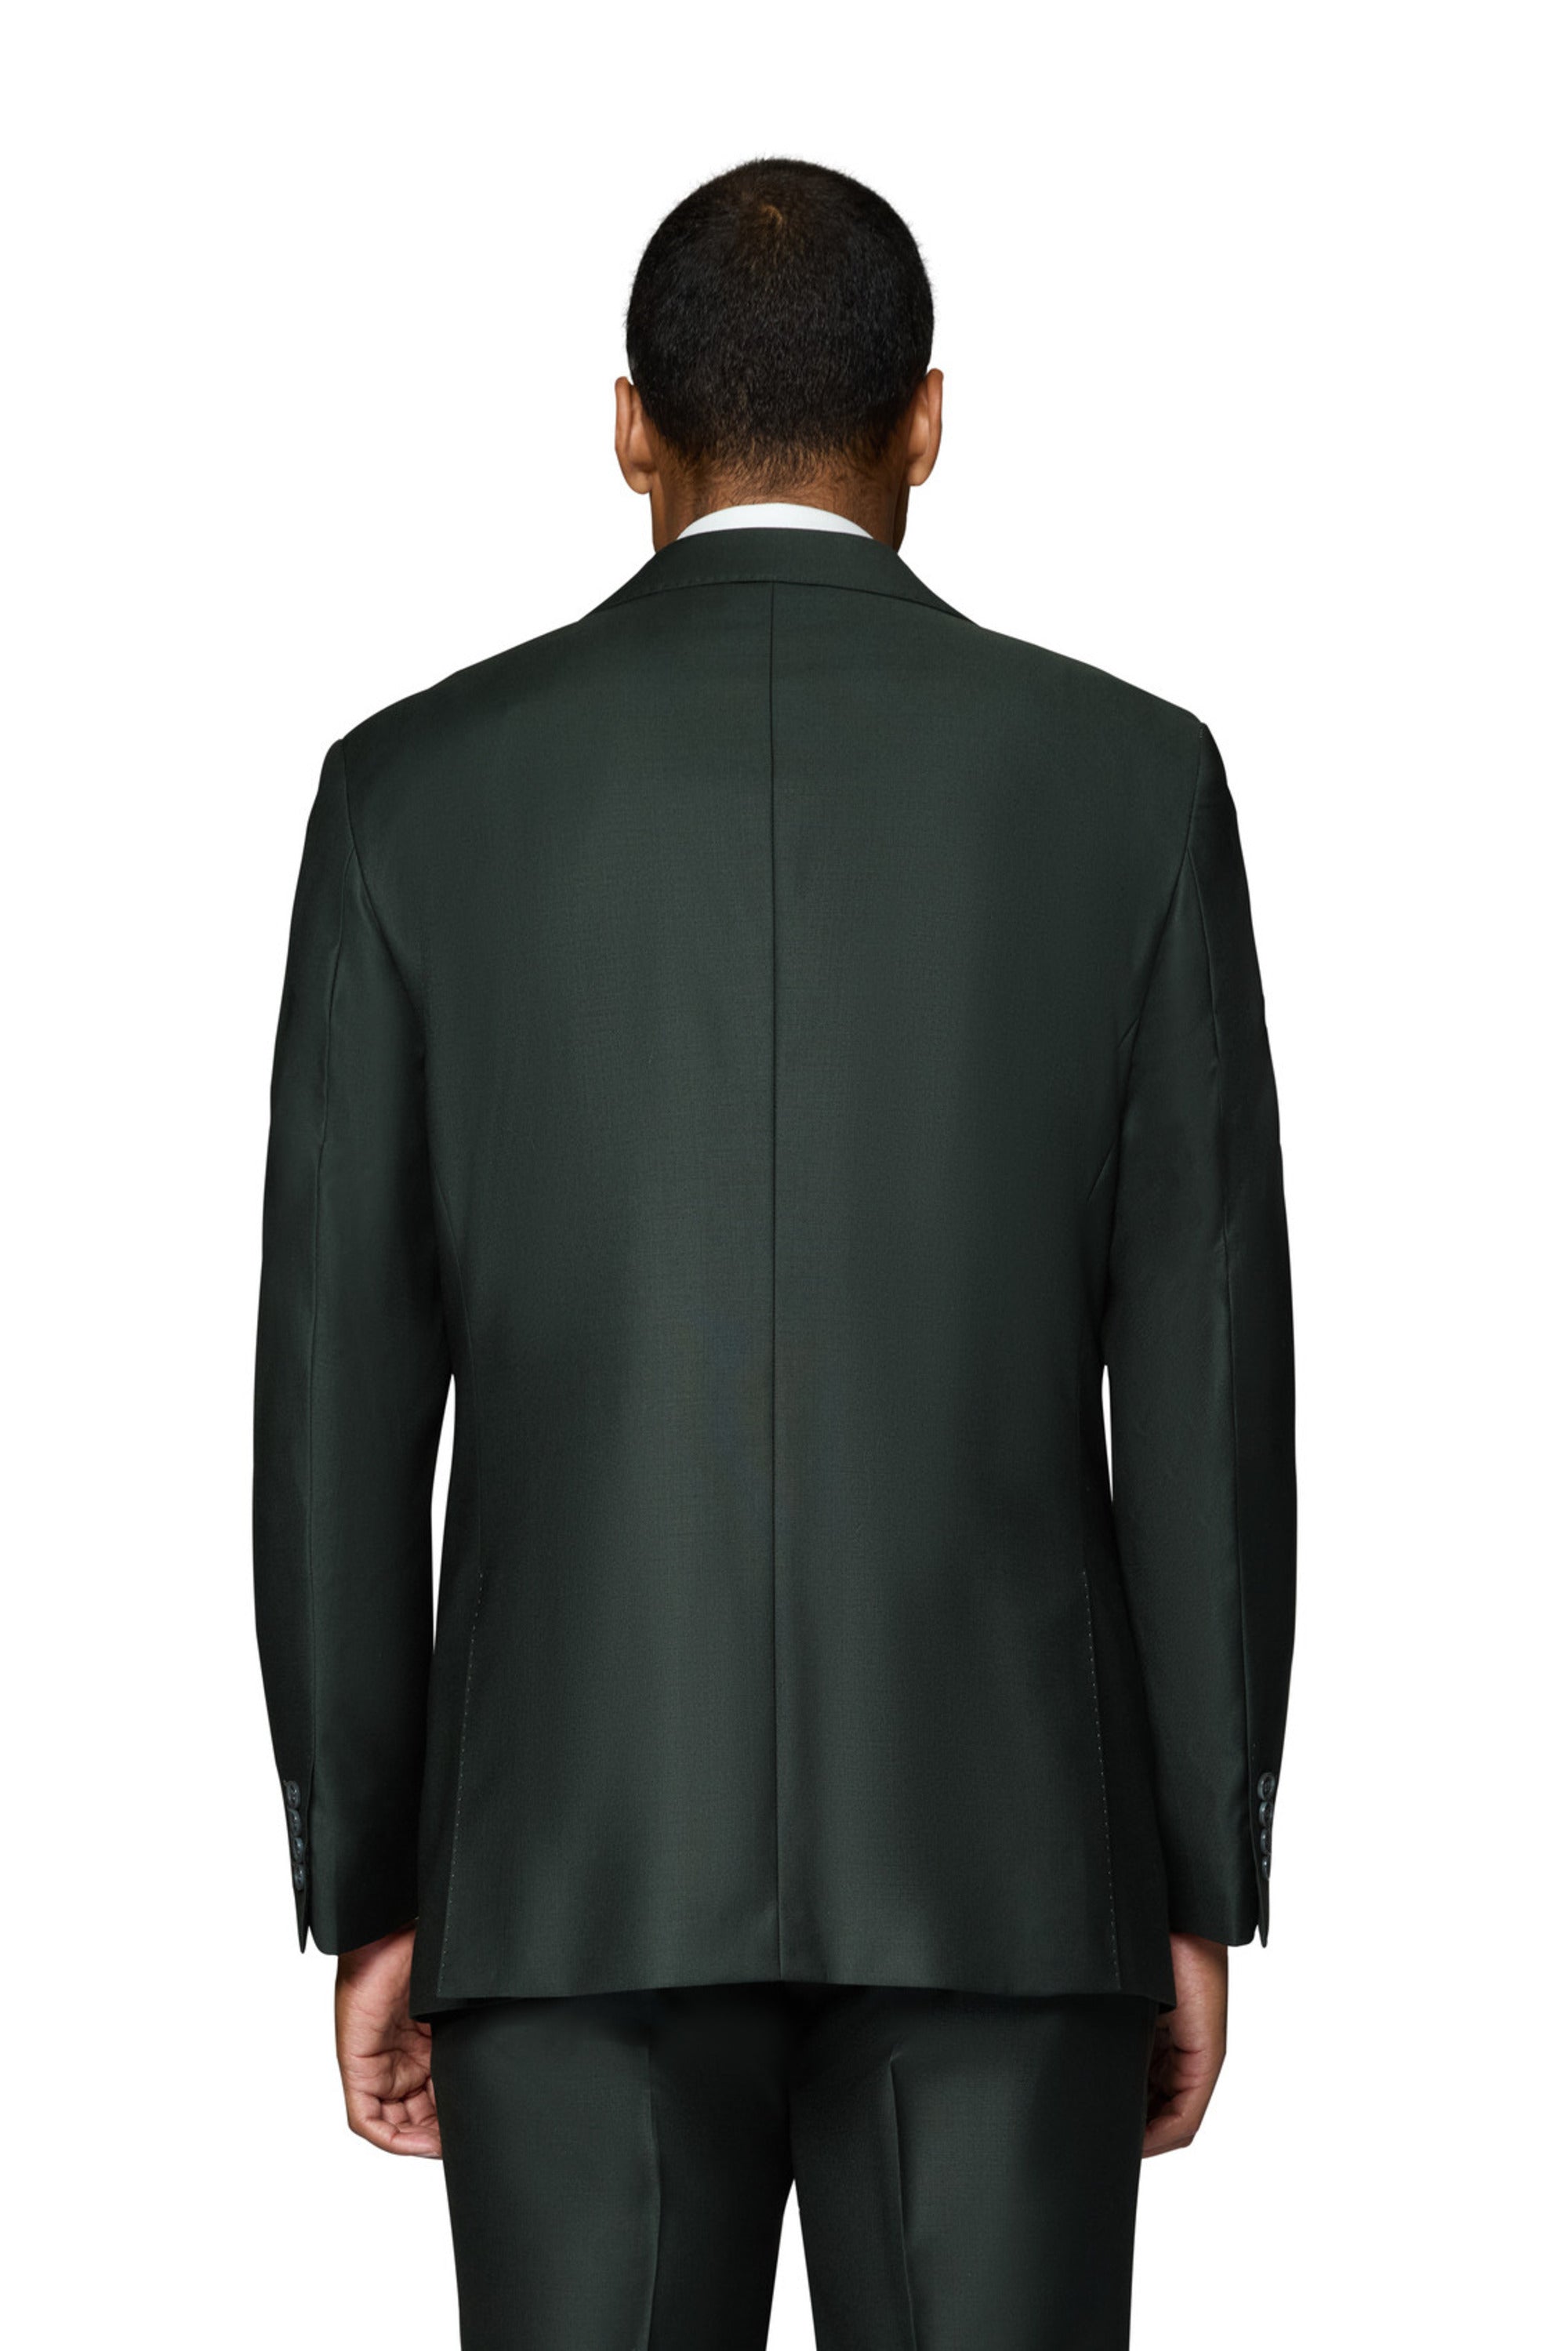 Berragamo Essex Elegant - Faille Wool Solid Suit - Olive